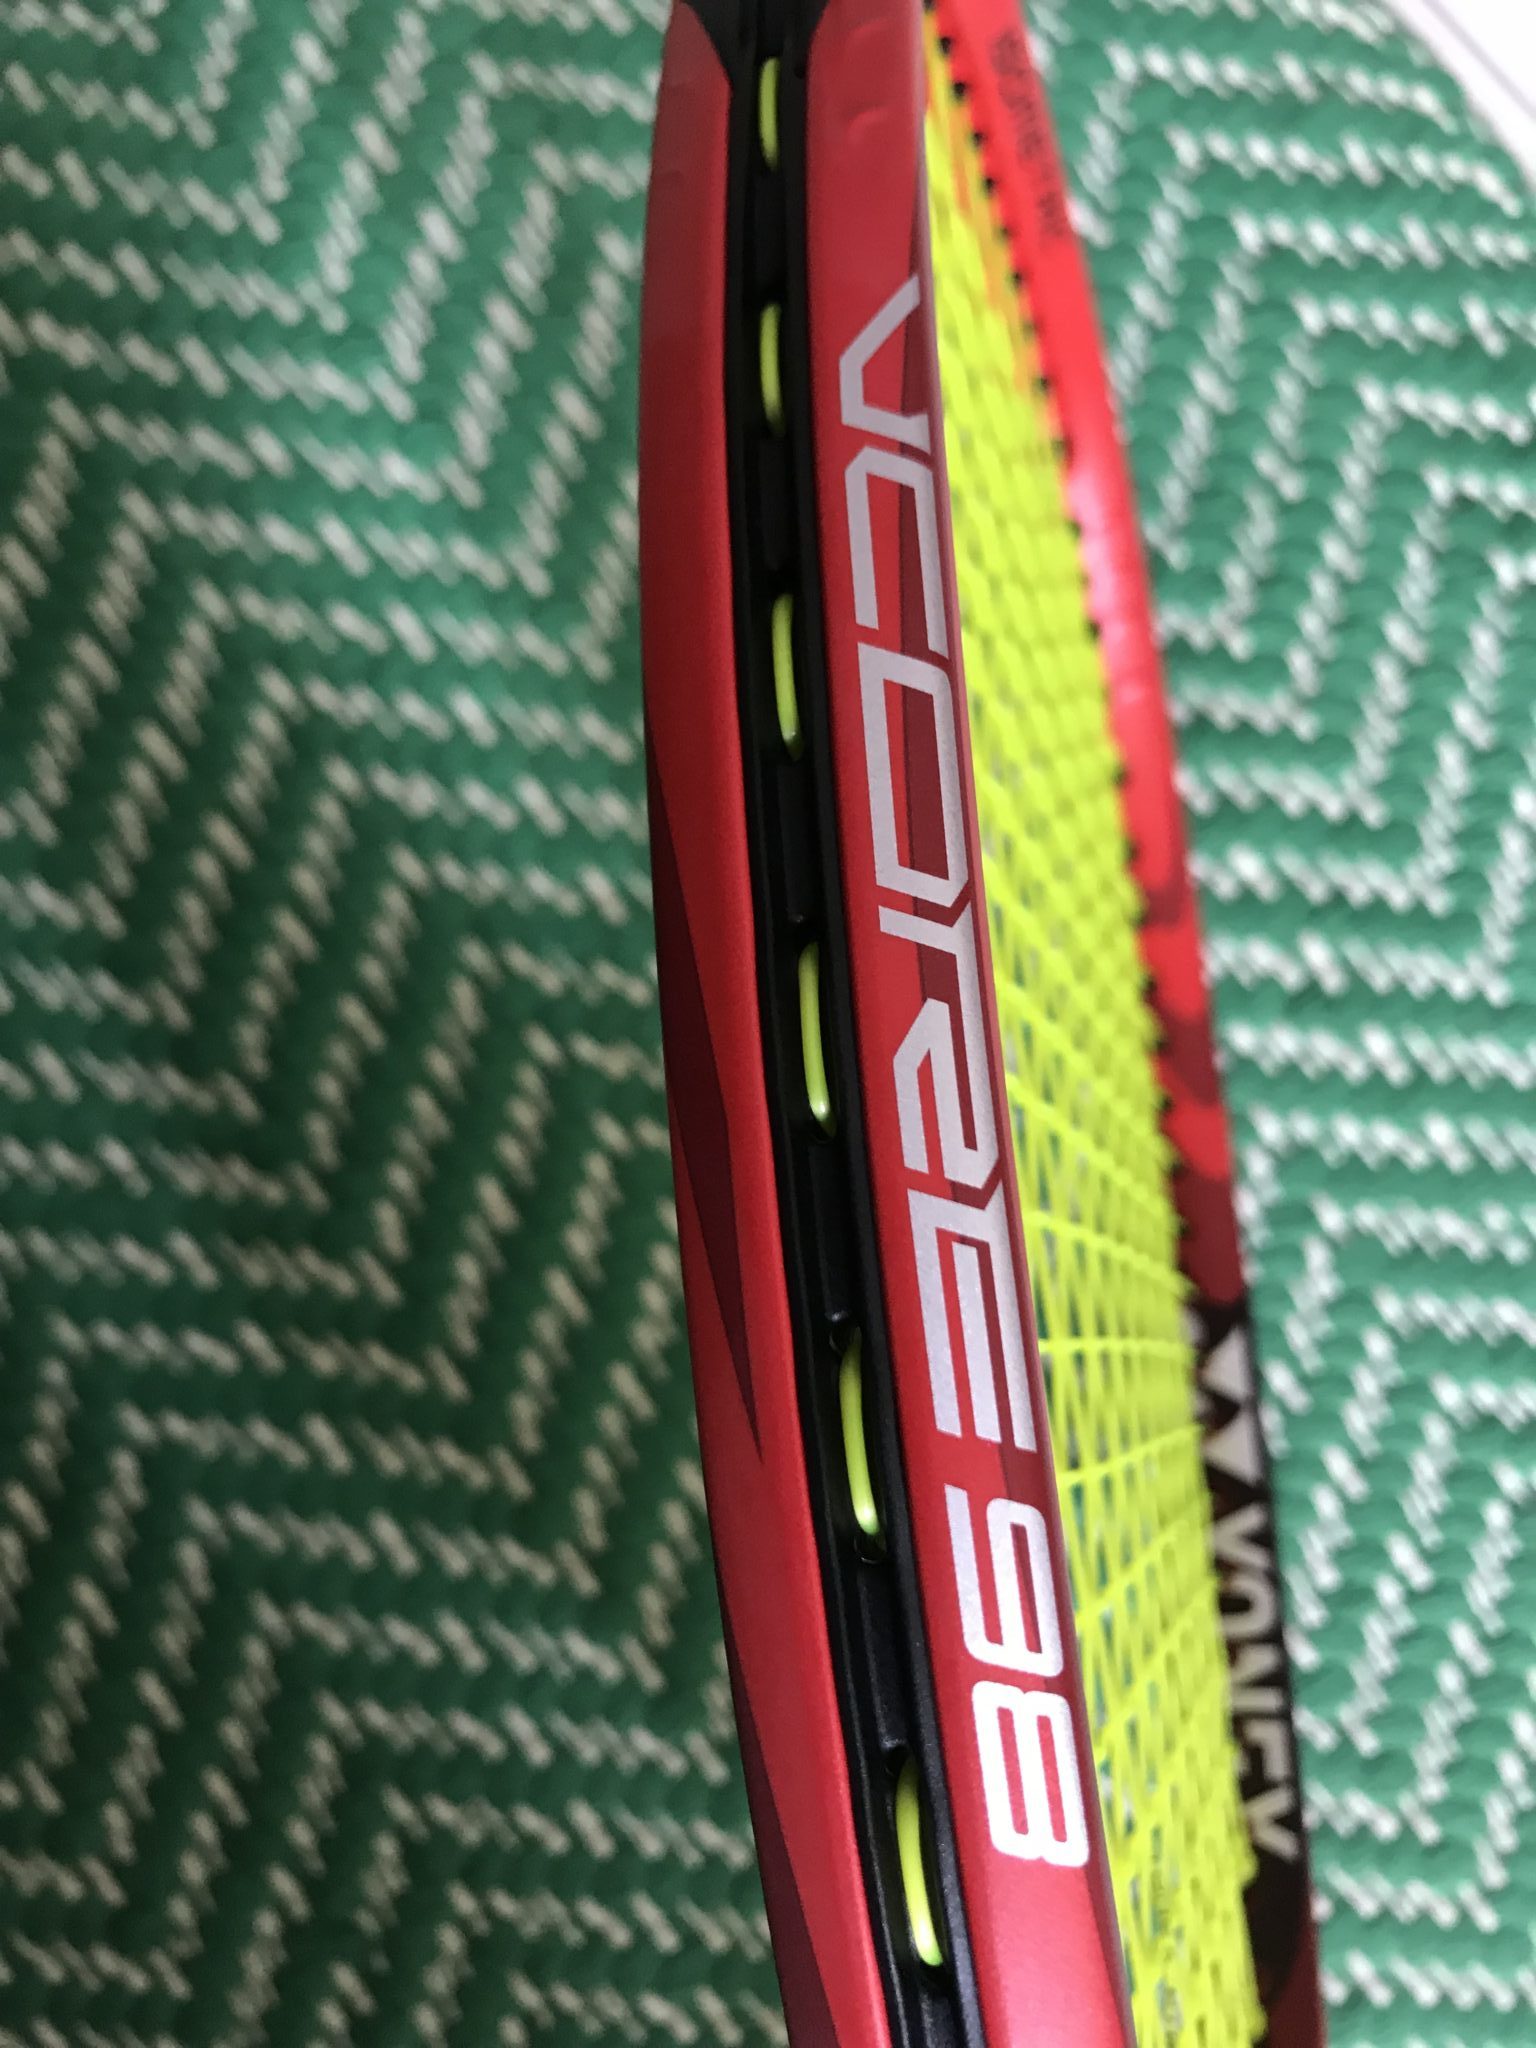 Yonex VCORE 98 Racquet Review - new racquet from Yonex tennis